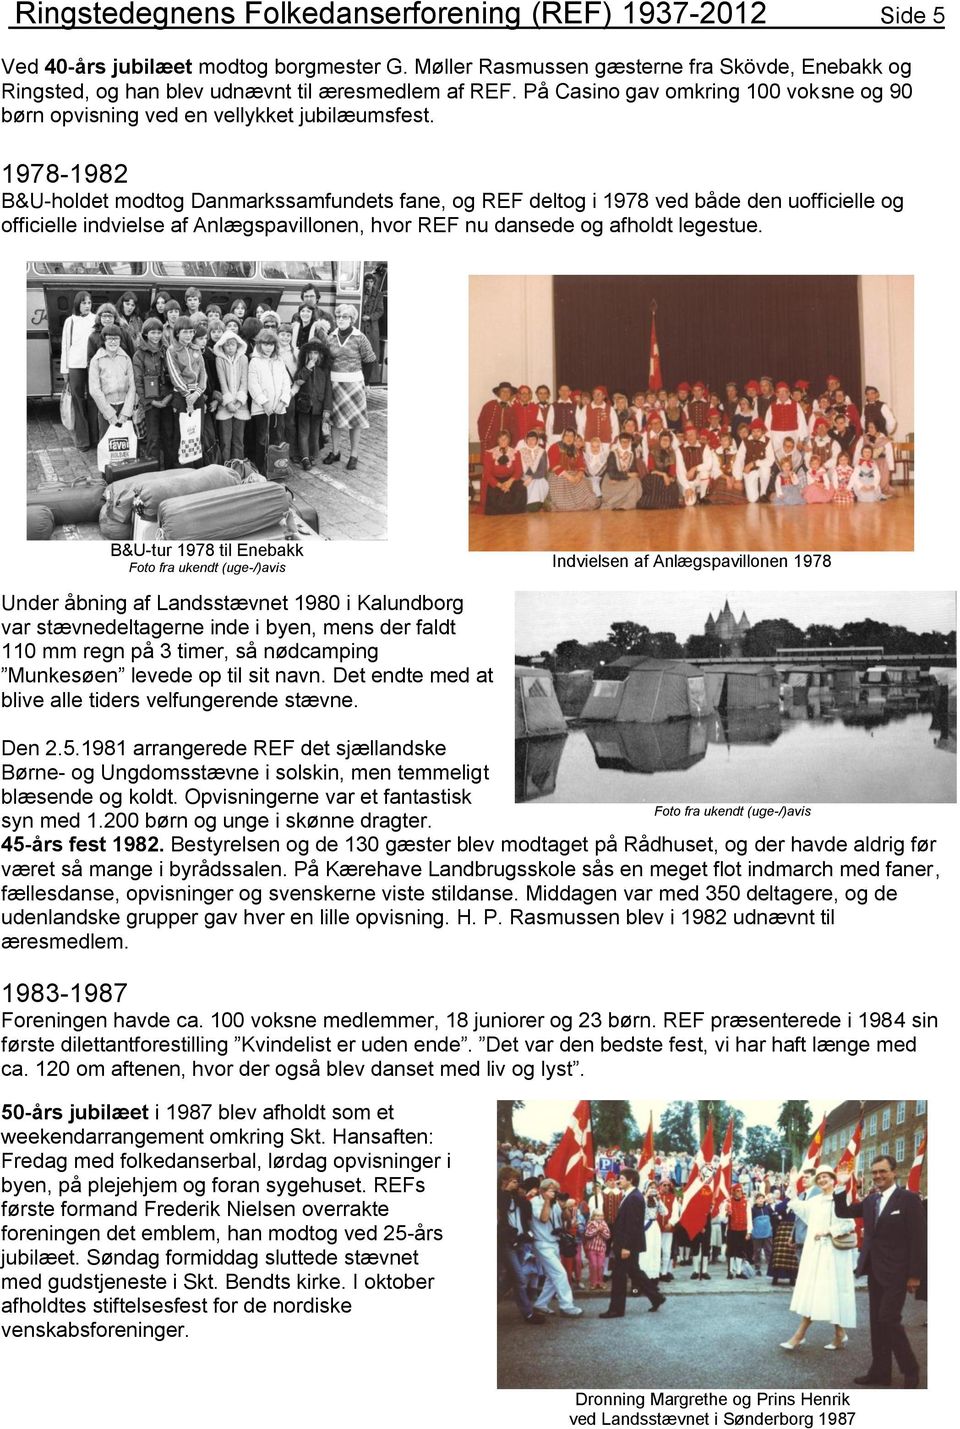 1978-1982 B&U-holdet modtog Danmarkssamfundets fane, og REF deltog i 1978 ved både den uofficielle og officielle indvielse af Anlægspavillonen, hvor REF nu dansede og afholdt legestue.